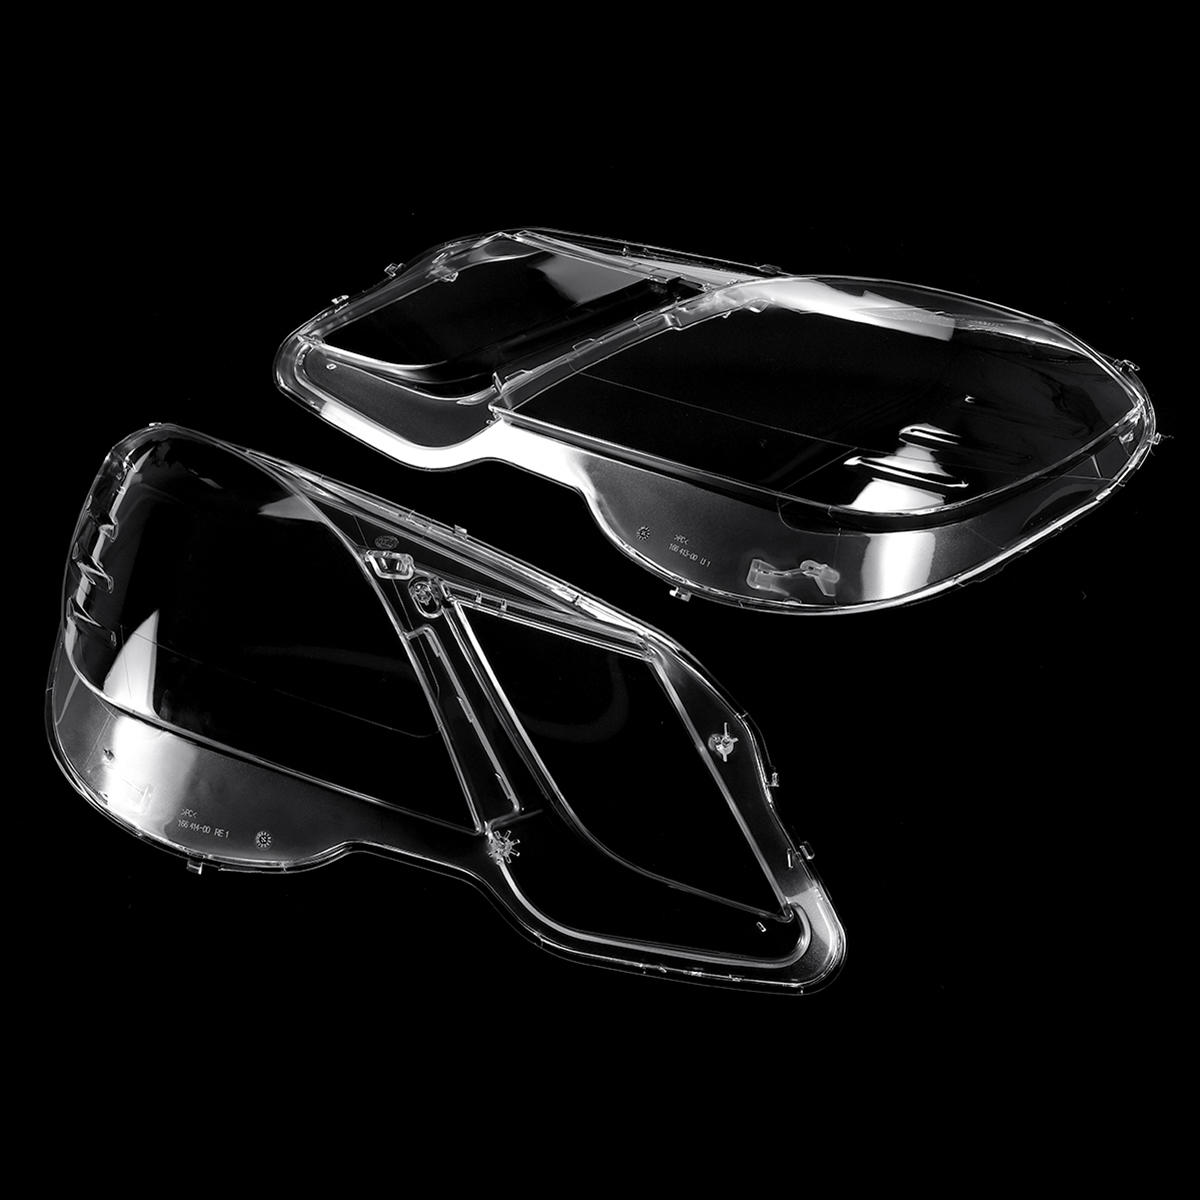 

Clear Car Headlight Headlamp Lens Cover For Mercedes Benz E Class W212 E200 E260 E300 E350 2009-2012